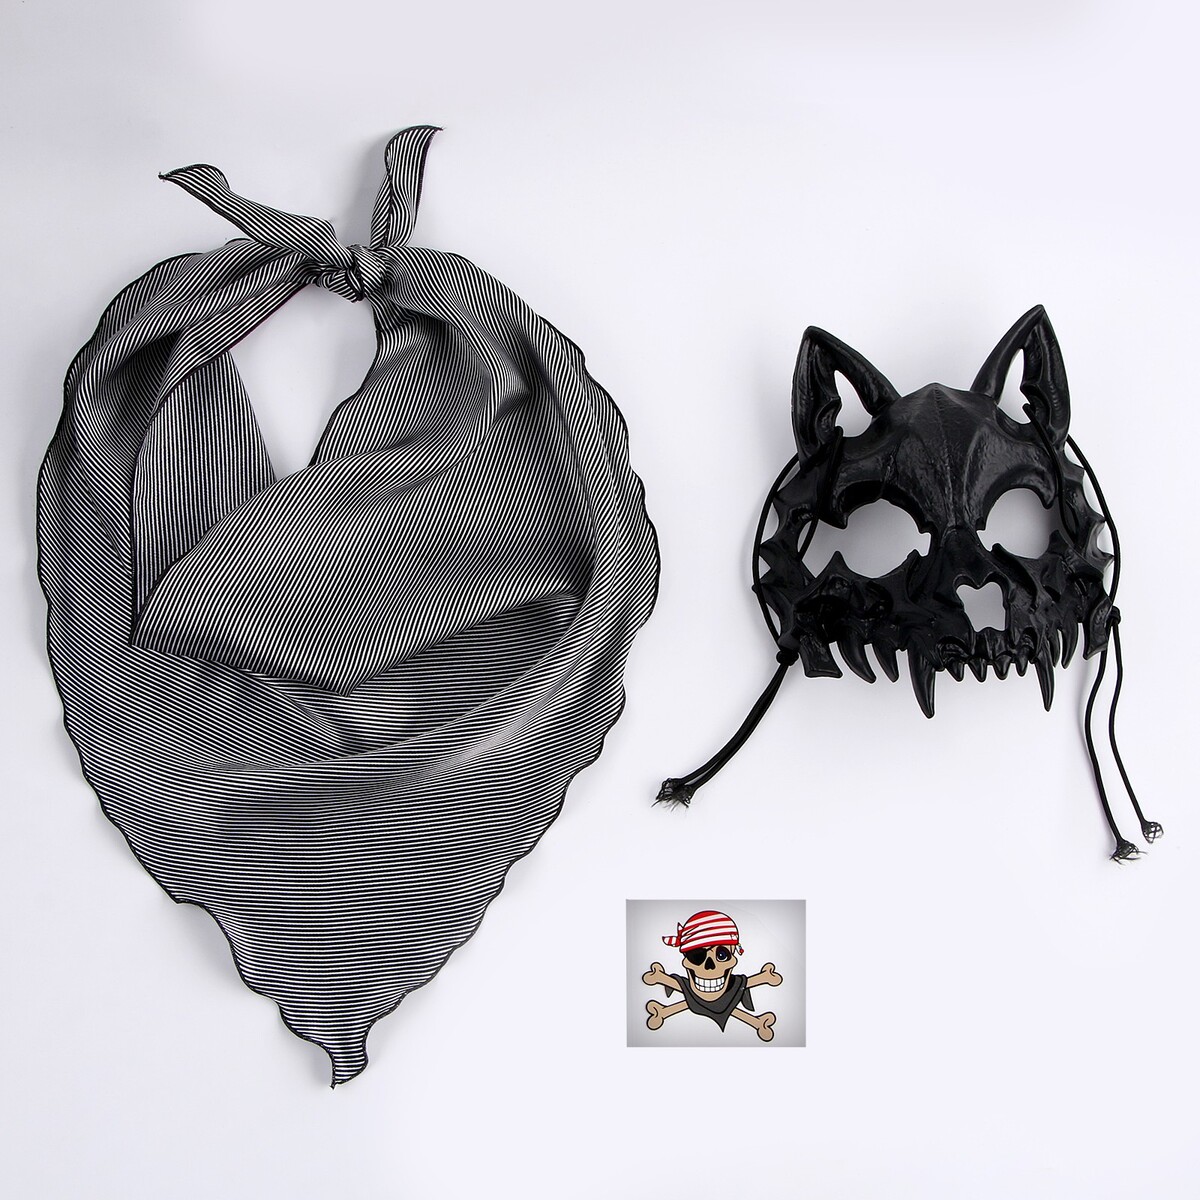 Карнавальный набор: бандана в полоску, маска собаки черная, термонаклейка